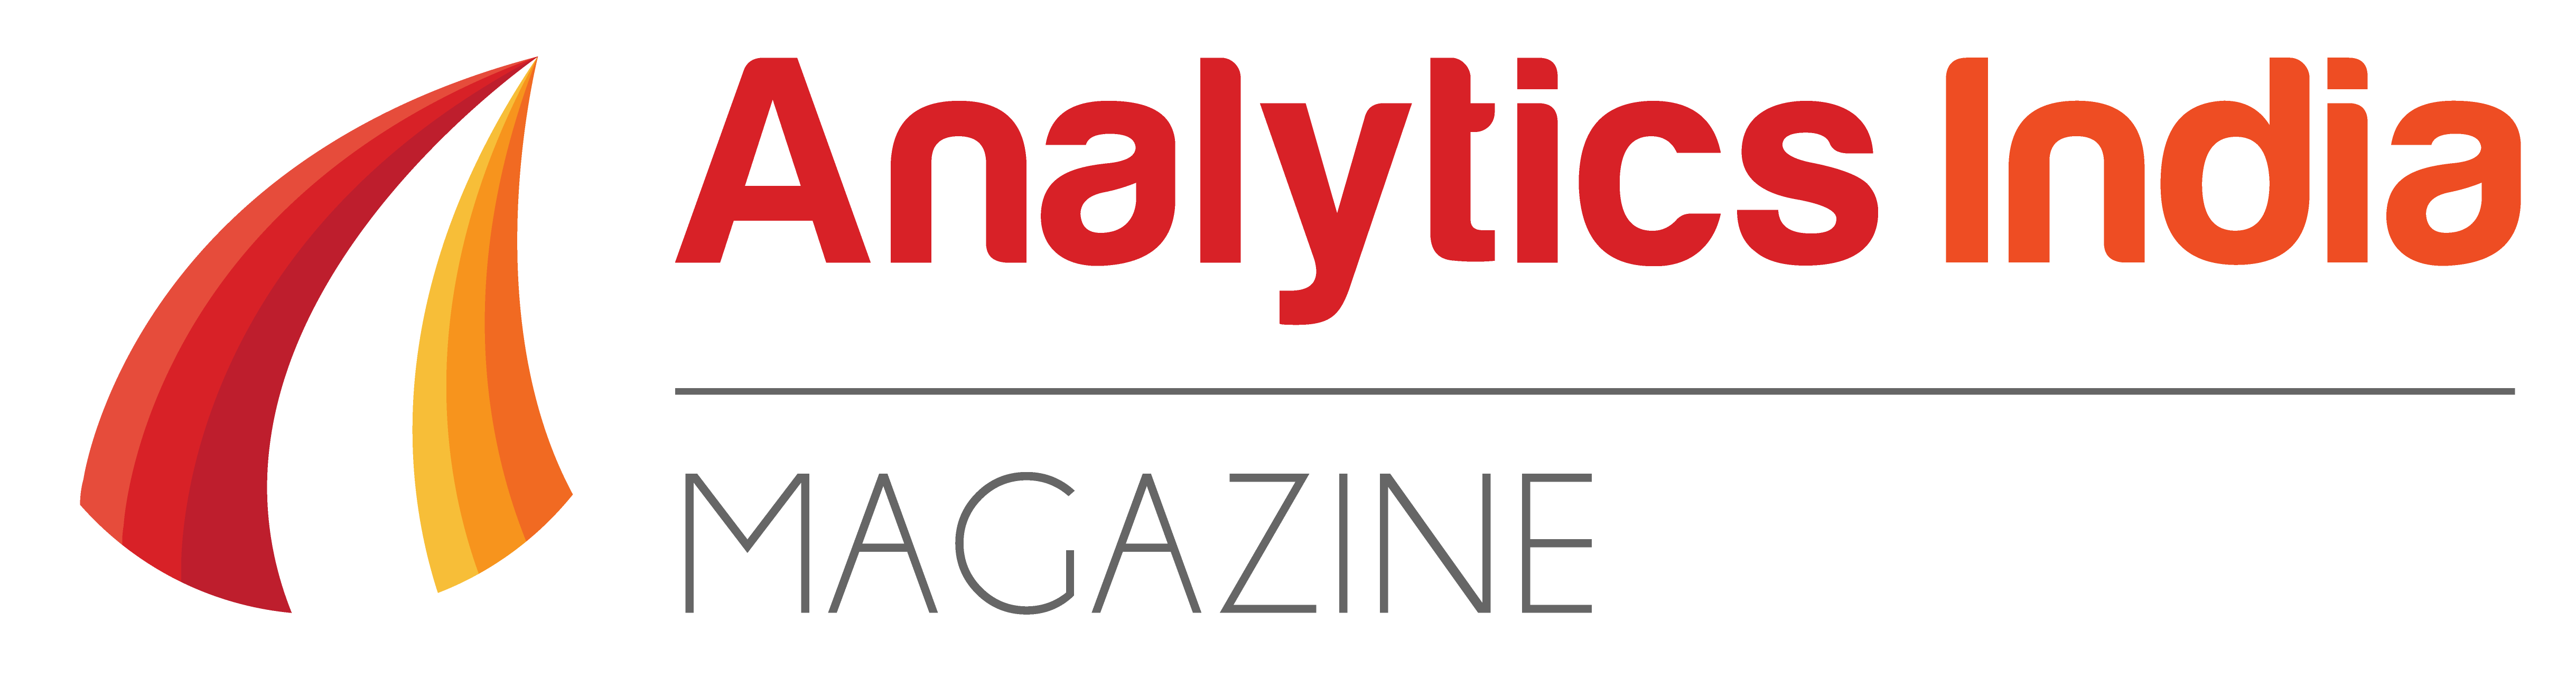 Analytics India magazine